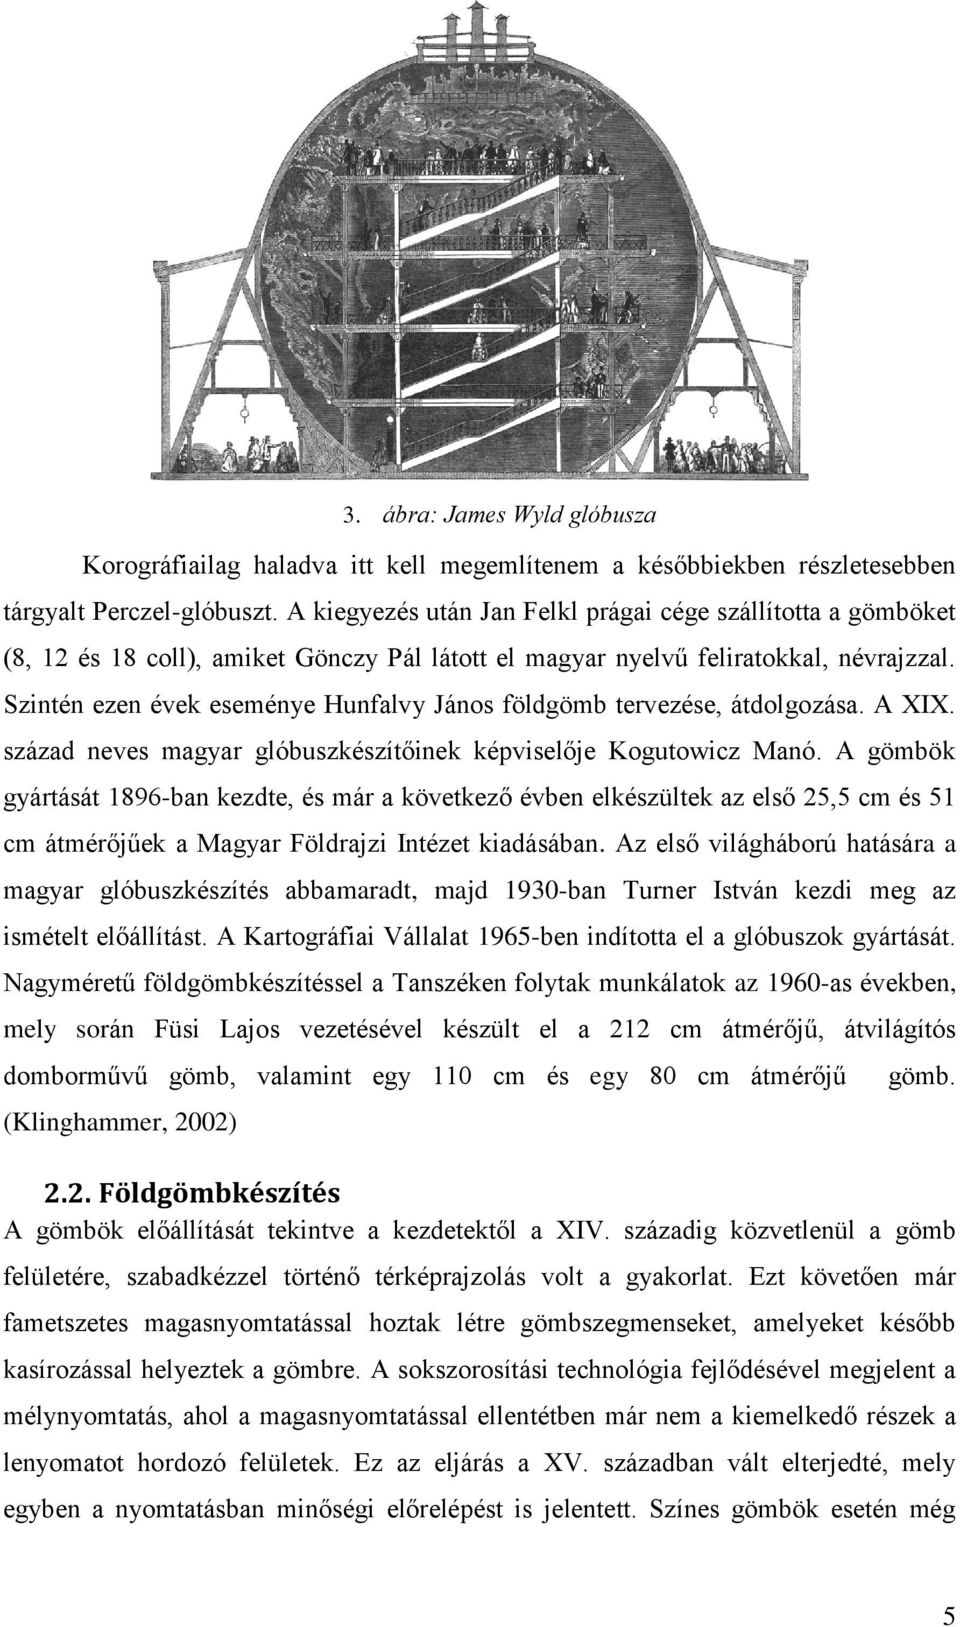 Szintén ezen évek eseménye Hunfalvy János földgömb tervezése, átdolgozása. A XIX. század neves magyar glóbuszkészítőinek képviselője Kogutowicz Manó.